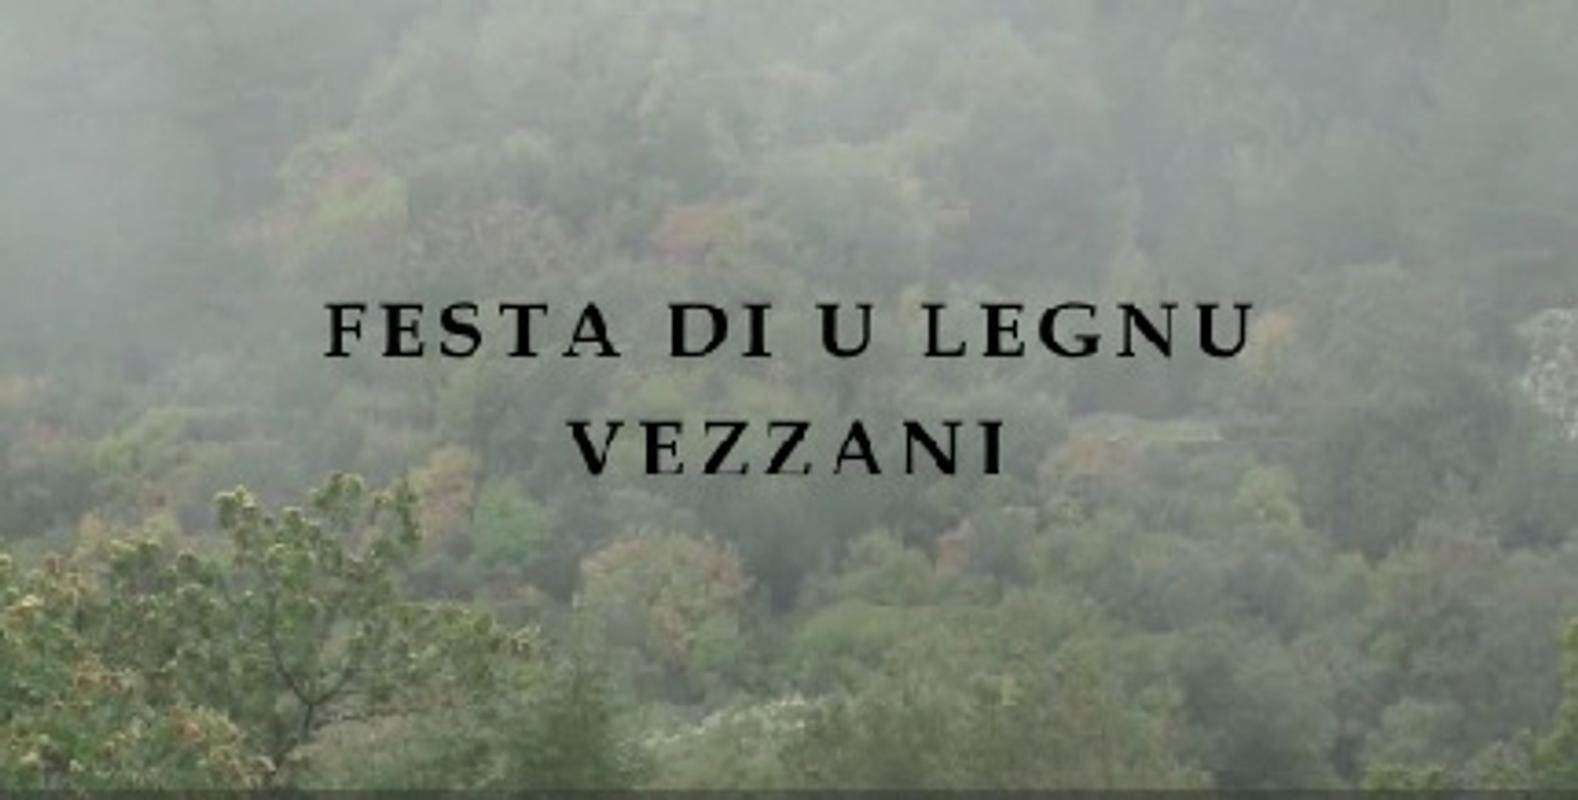 Festa di u legnu è di a furesta in Vezzani